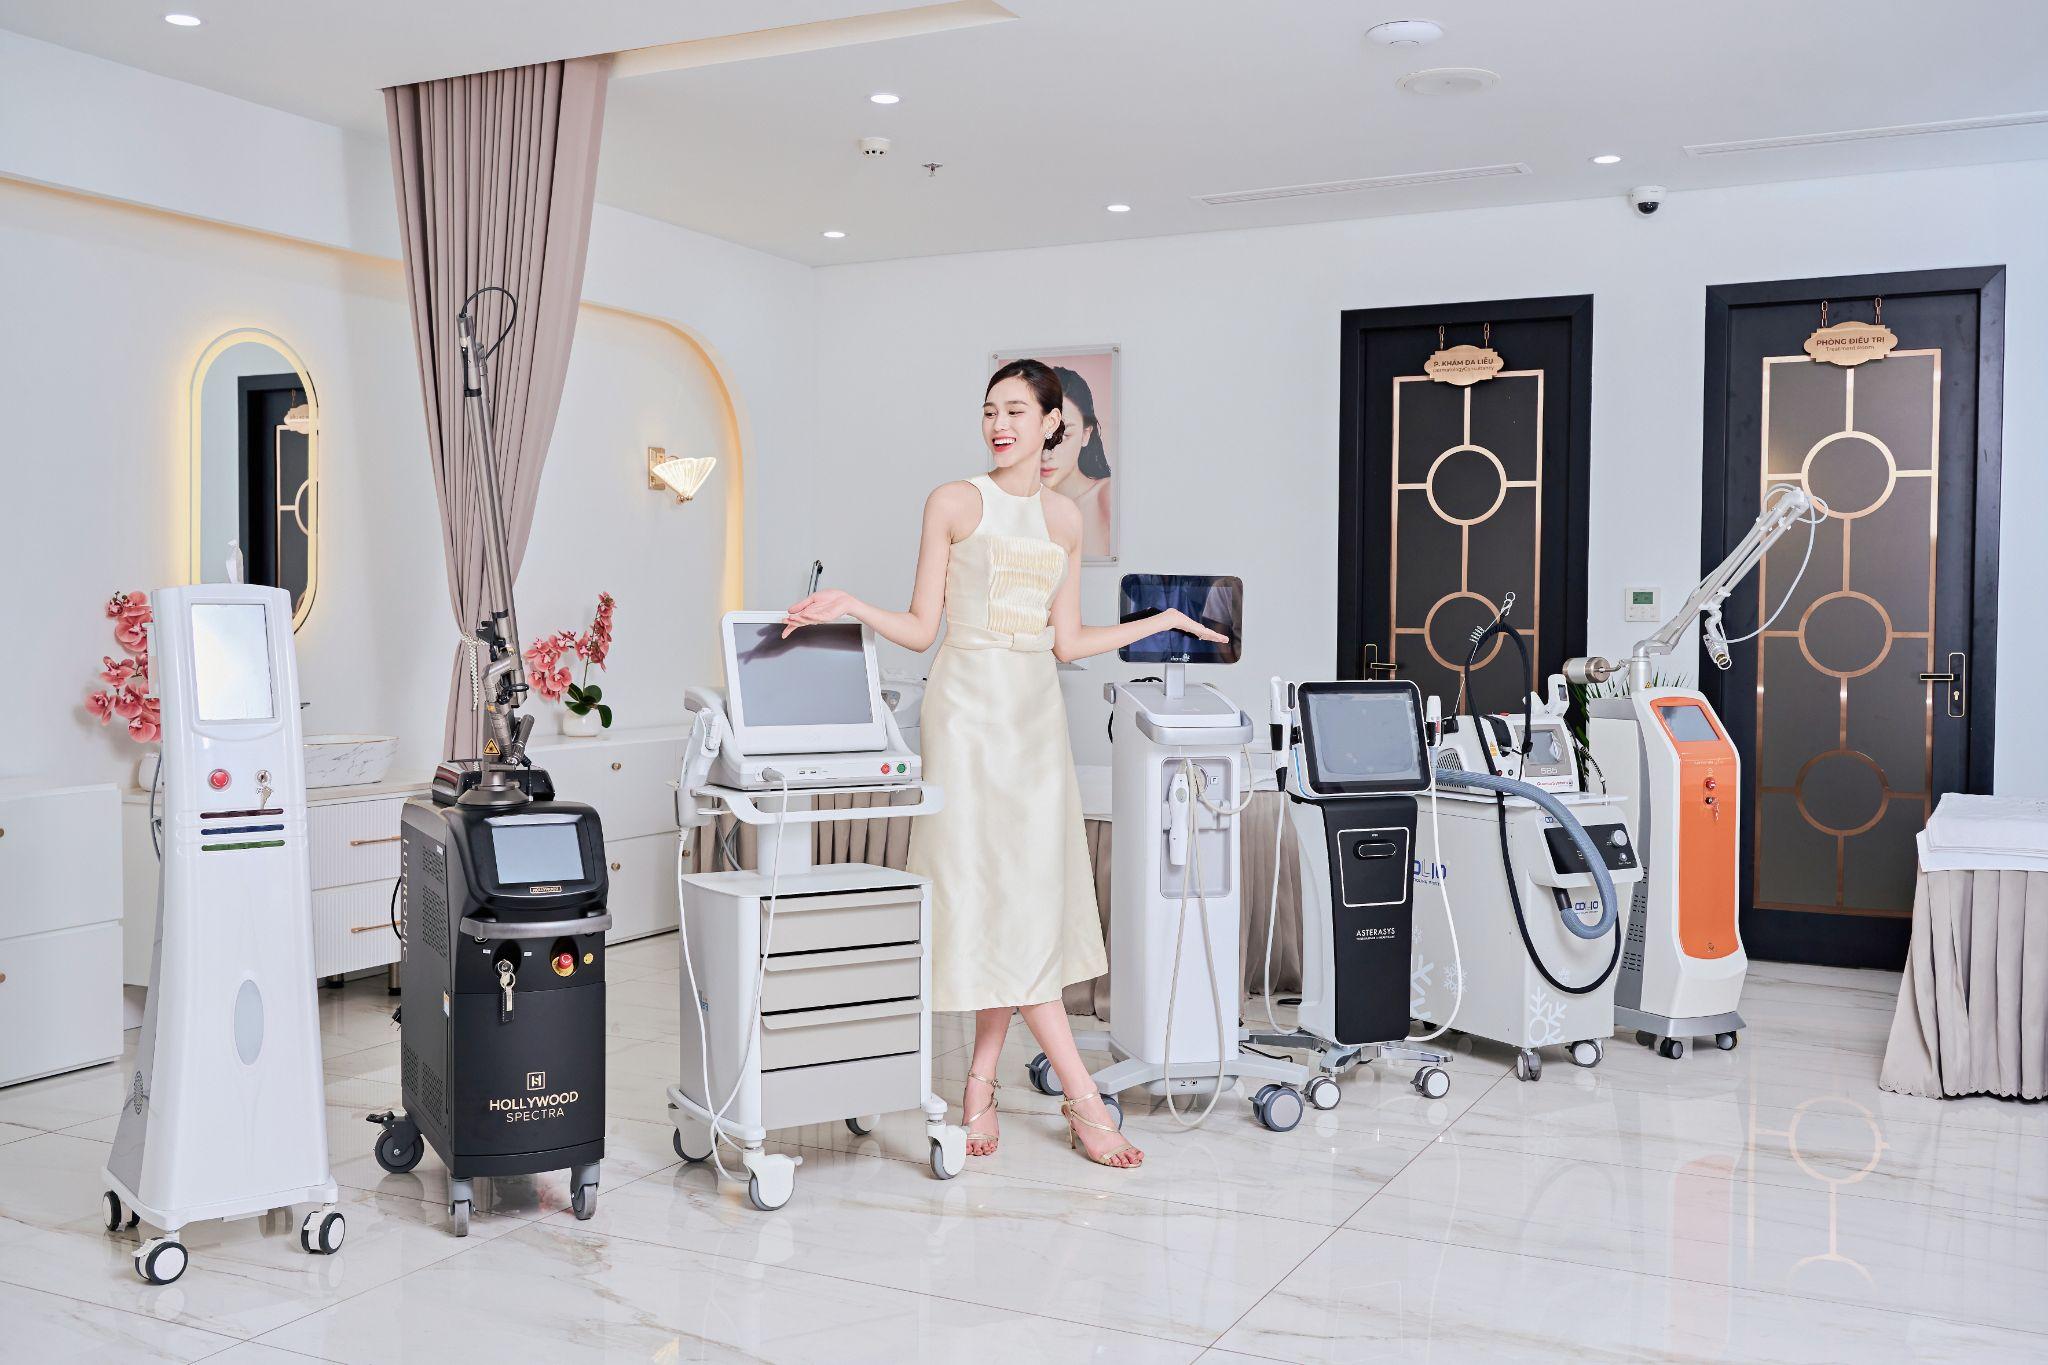 Hoa hậu Đỗ Hà bên những trang thiết bị, máy móc làm đẹp hiện đại